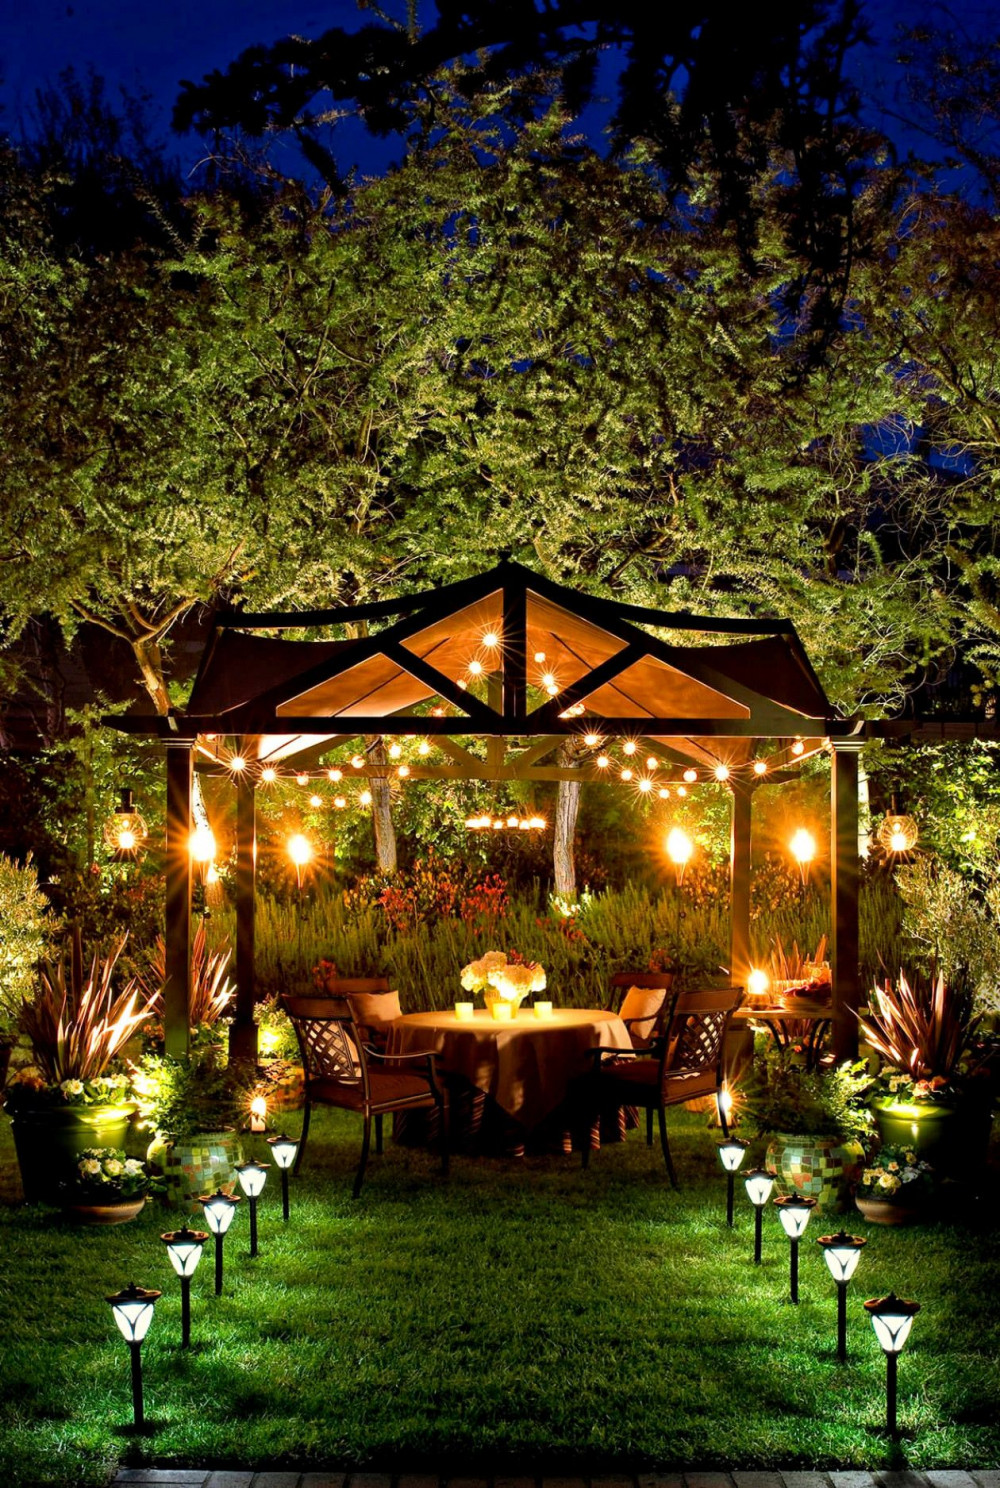 Bàn trà giữa vườn dưới ánh đèn lãng mạn